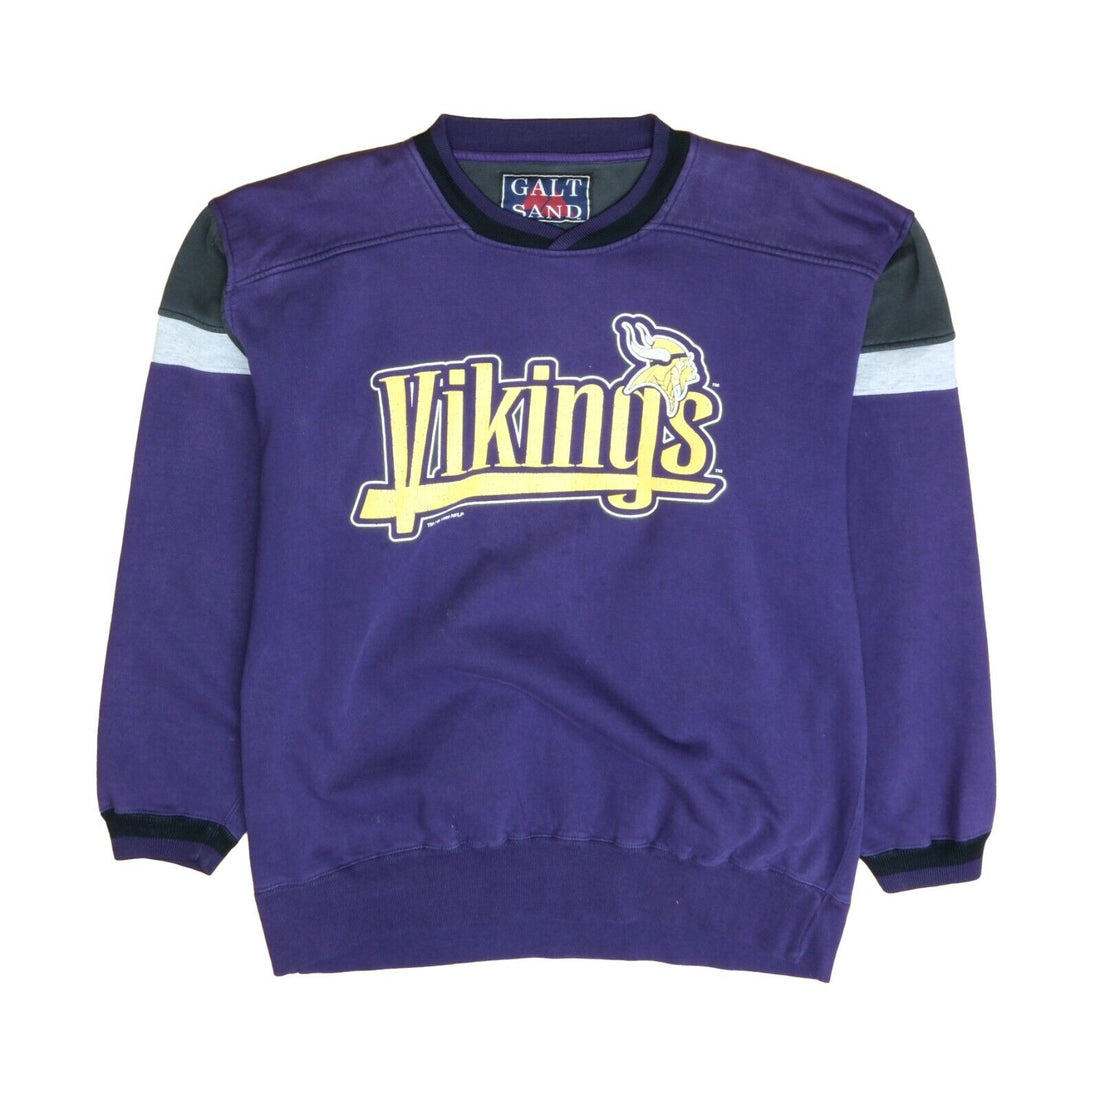 Vintage Minnesota Vikings Sweatshirt Crewneck Size Large 1996 90s NFL